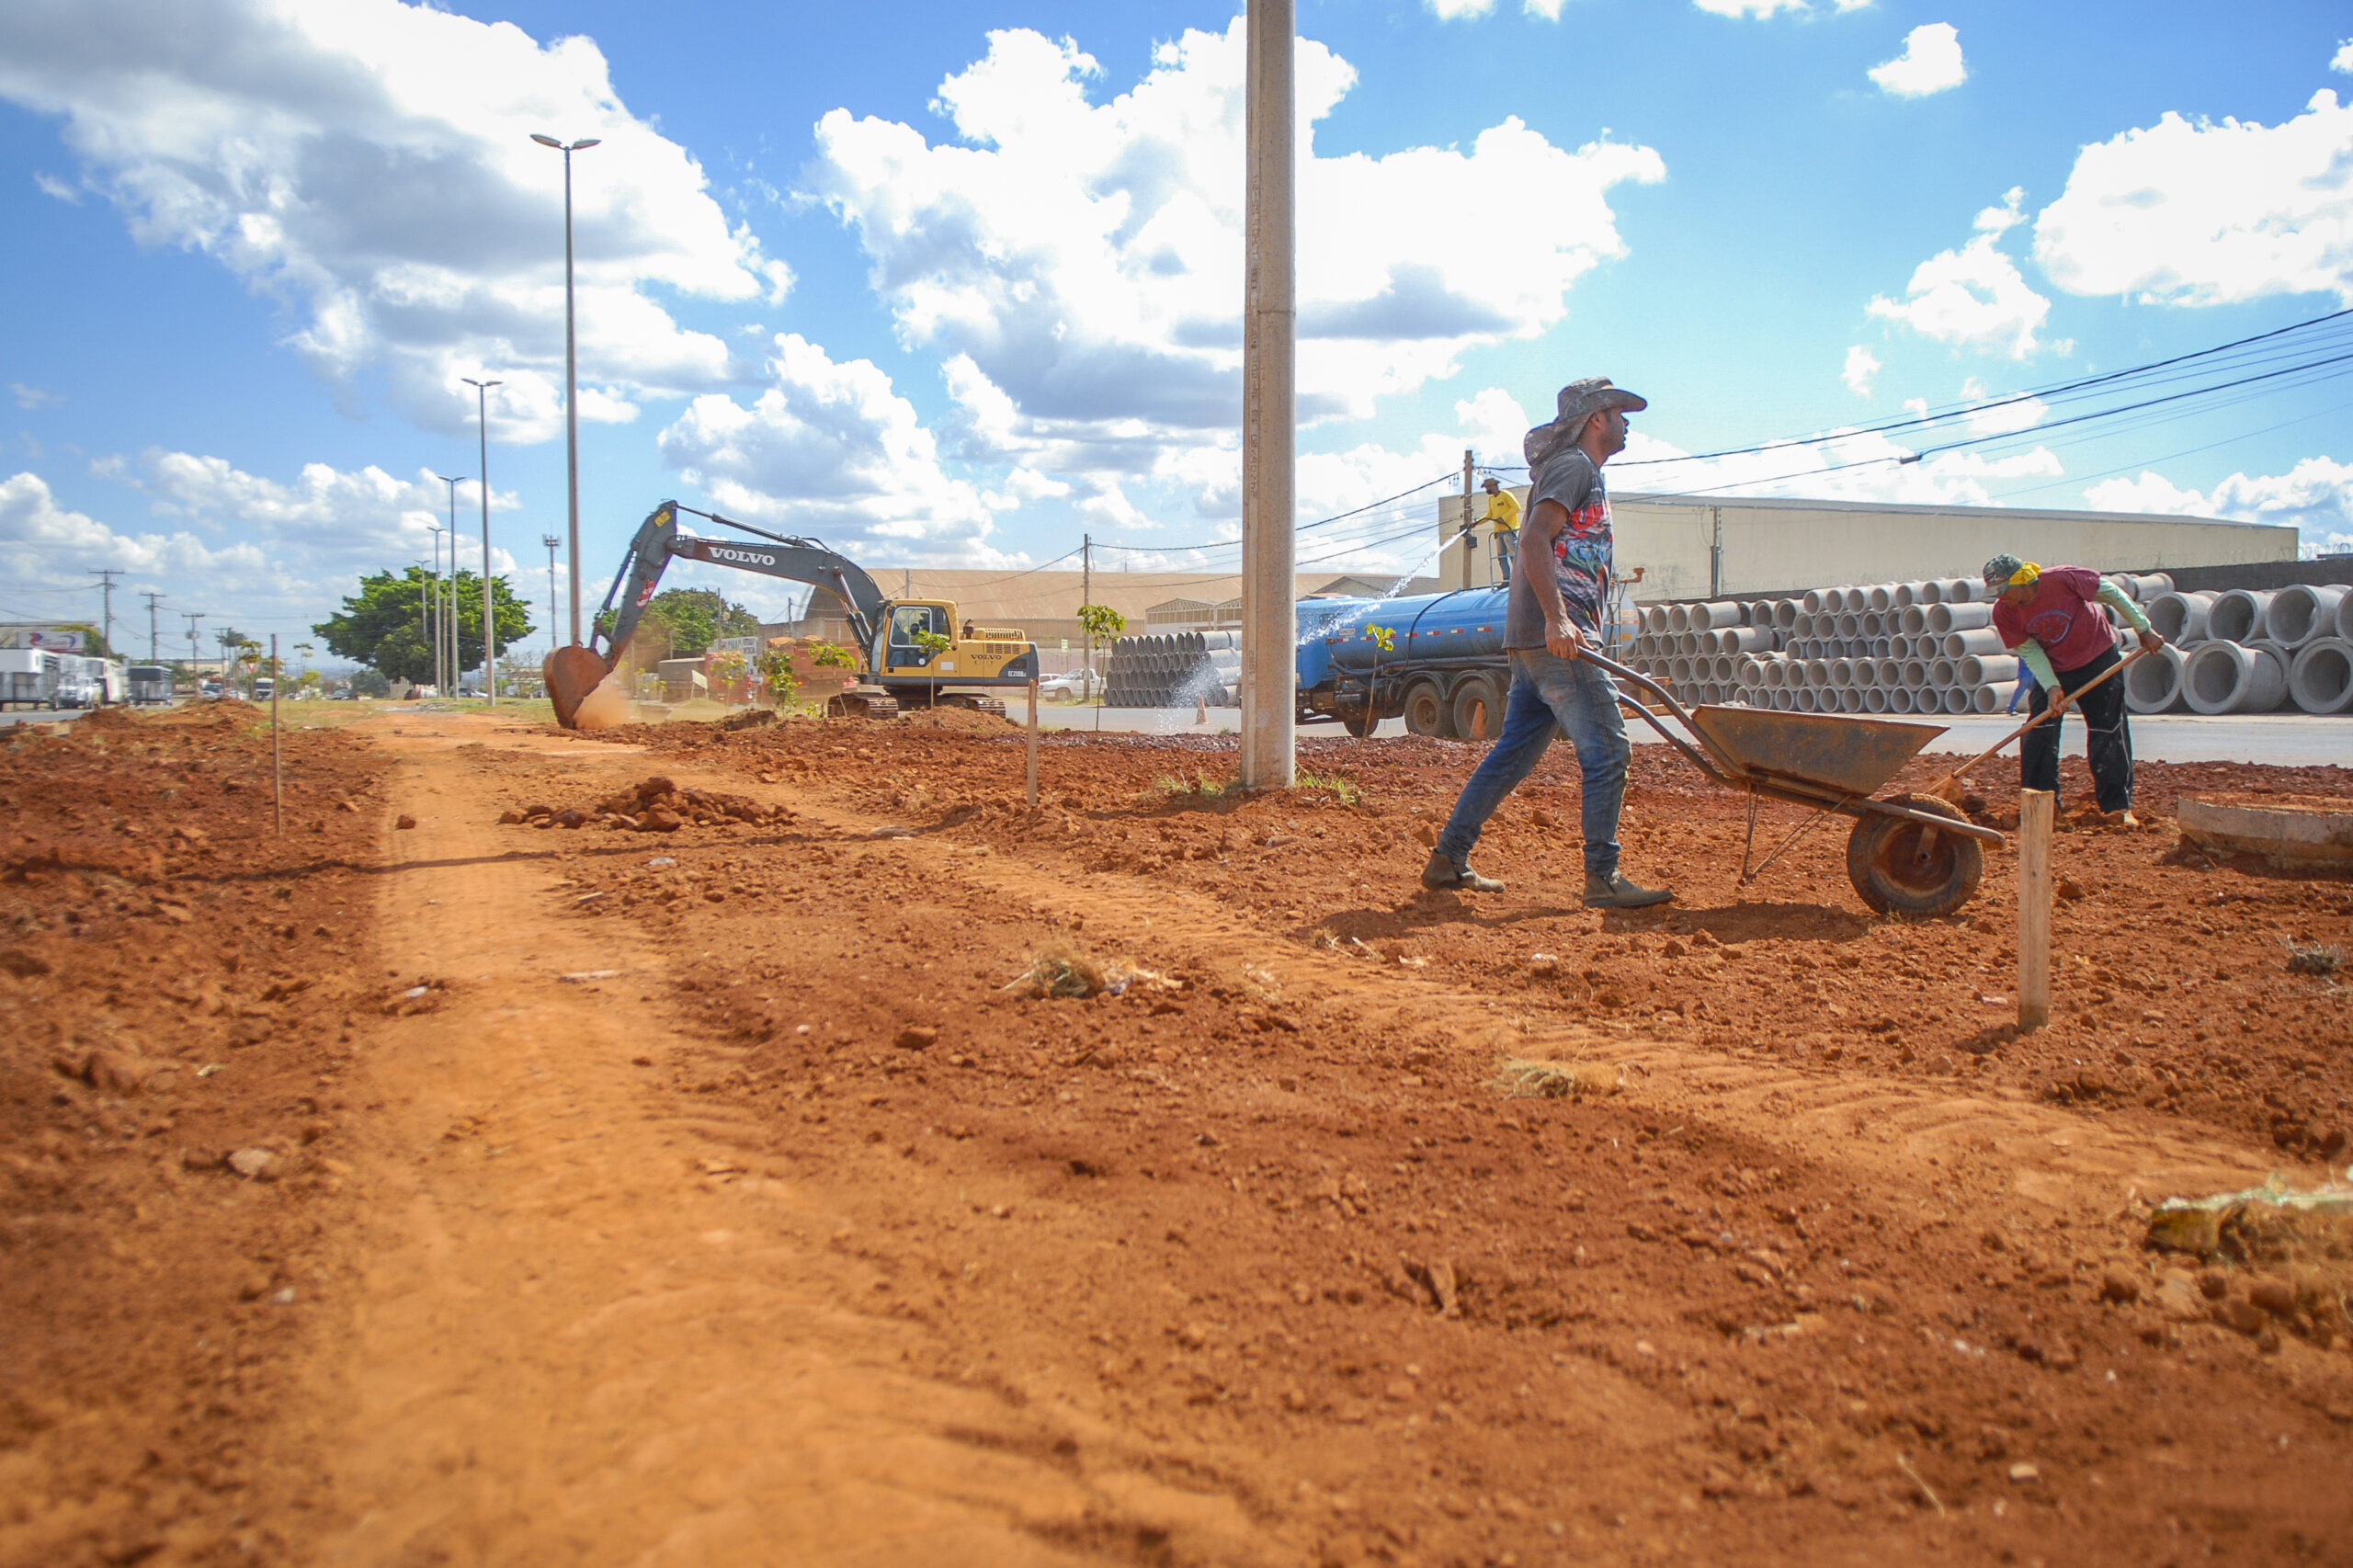 Com 2,3 km de extensão, a pista exclusiva para bicicletas vai conectar os pontos de ônibus e as duas praças da Área de Desenvolvimento Econômico | Fotos: Geovana Albuquerque/Agência Brasília